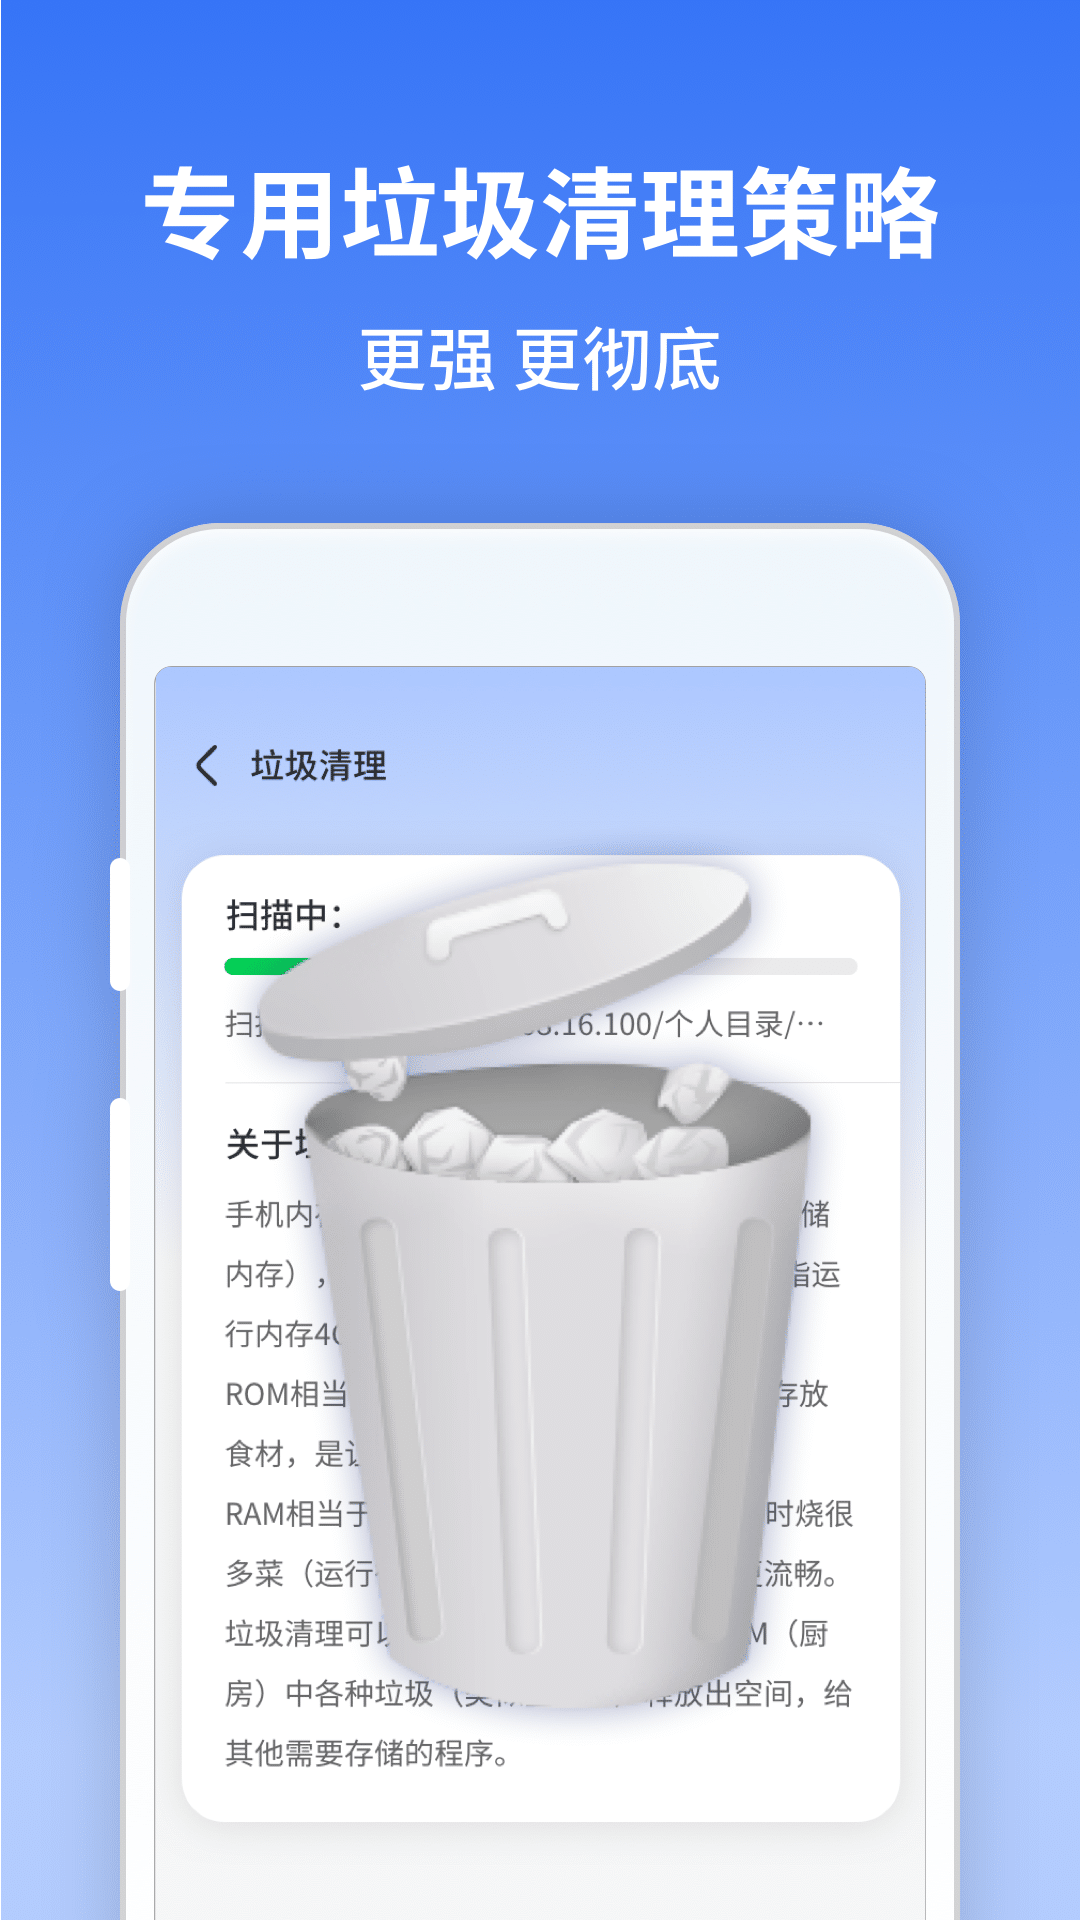 慧点清理大师app最新版 v1.0.220815.464 安卓版 1